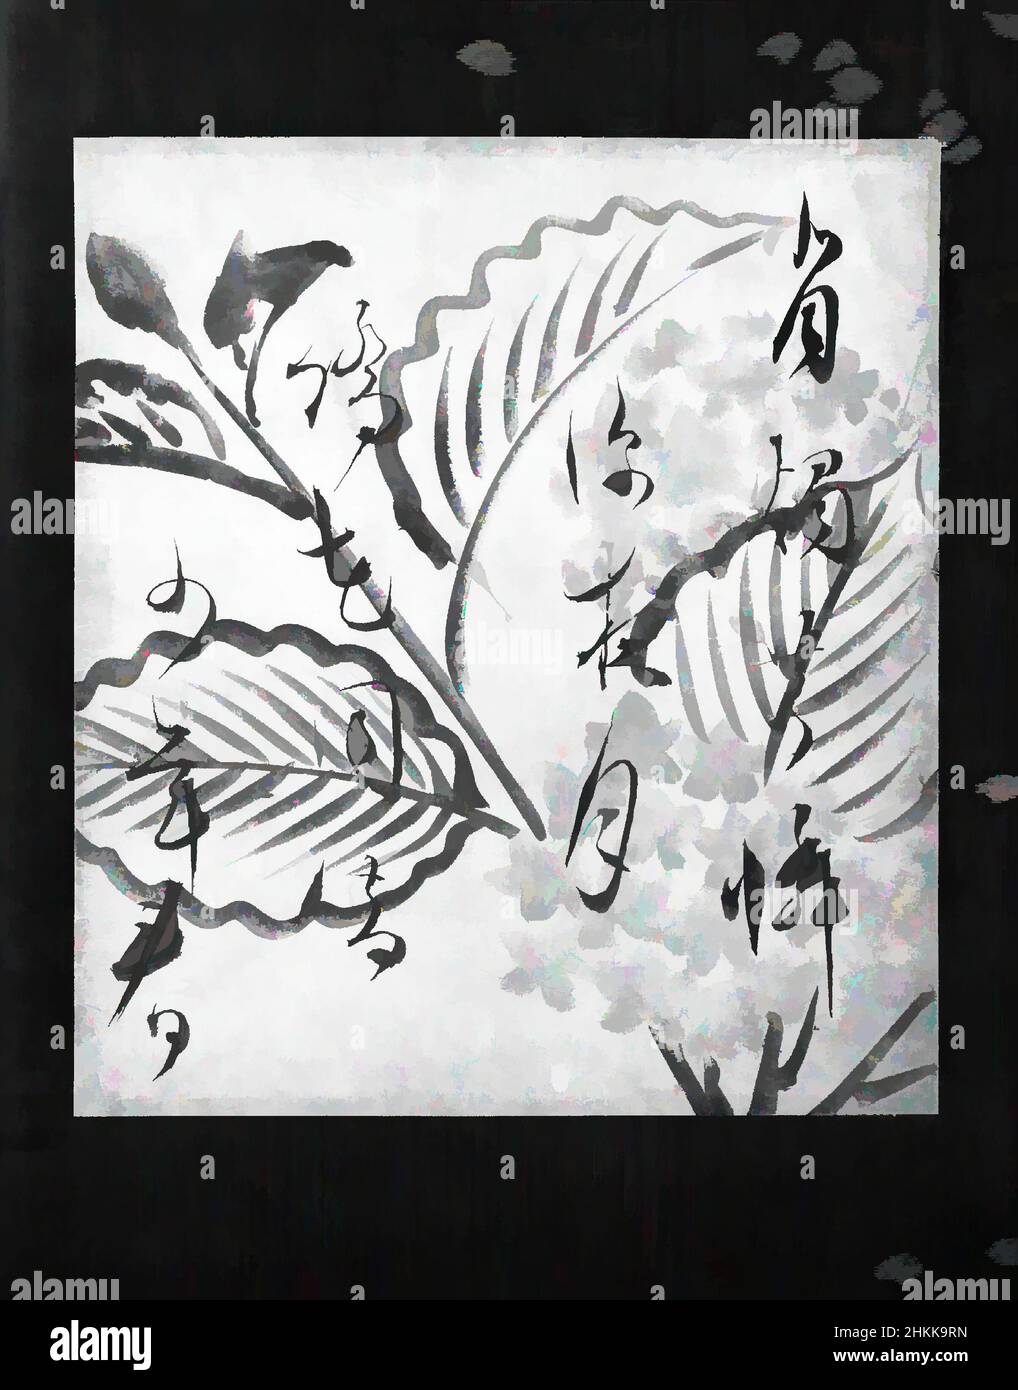 ONE PIECE Japanese ink writing style illustration of battle scene "Shikishi" 9in 